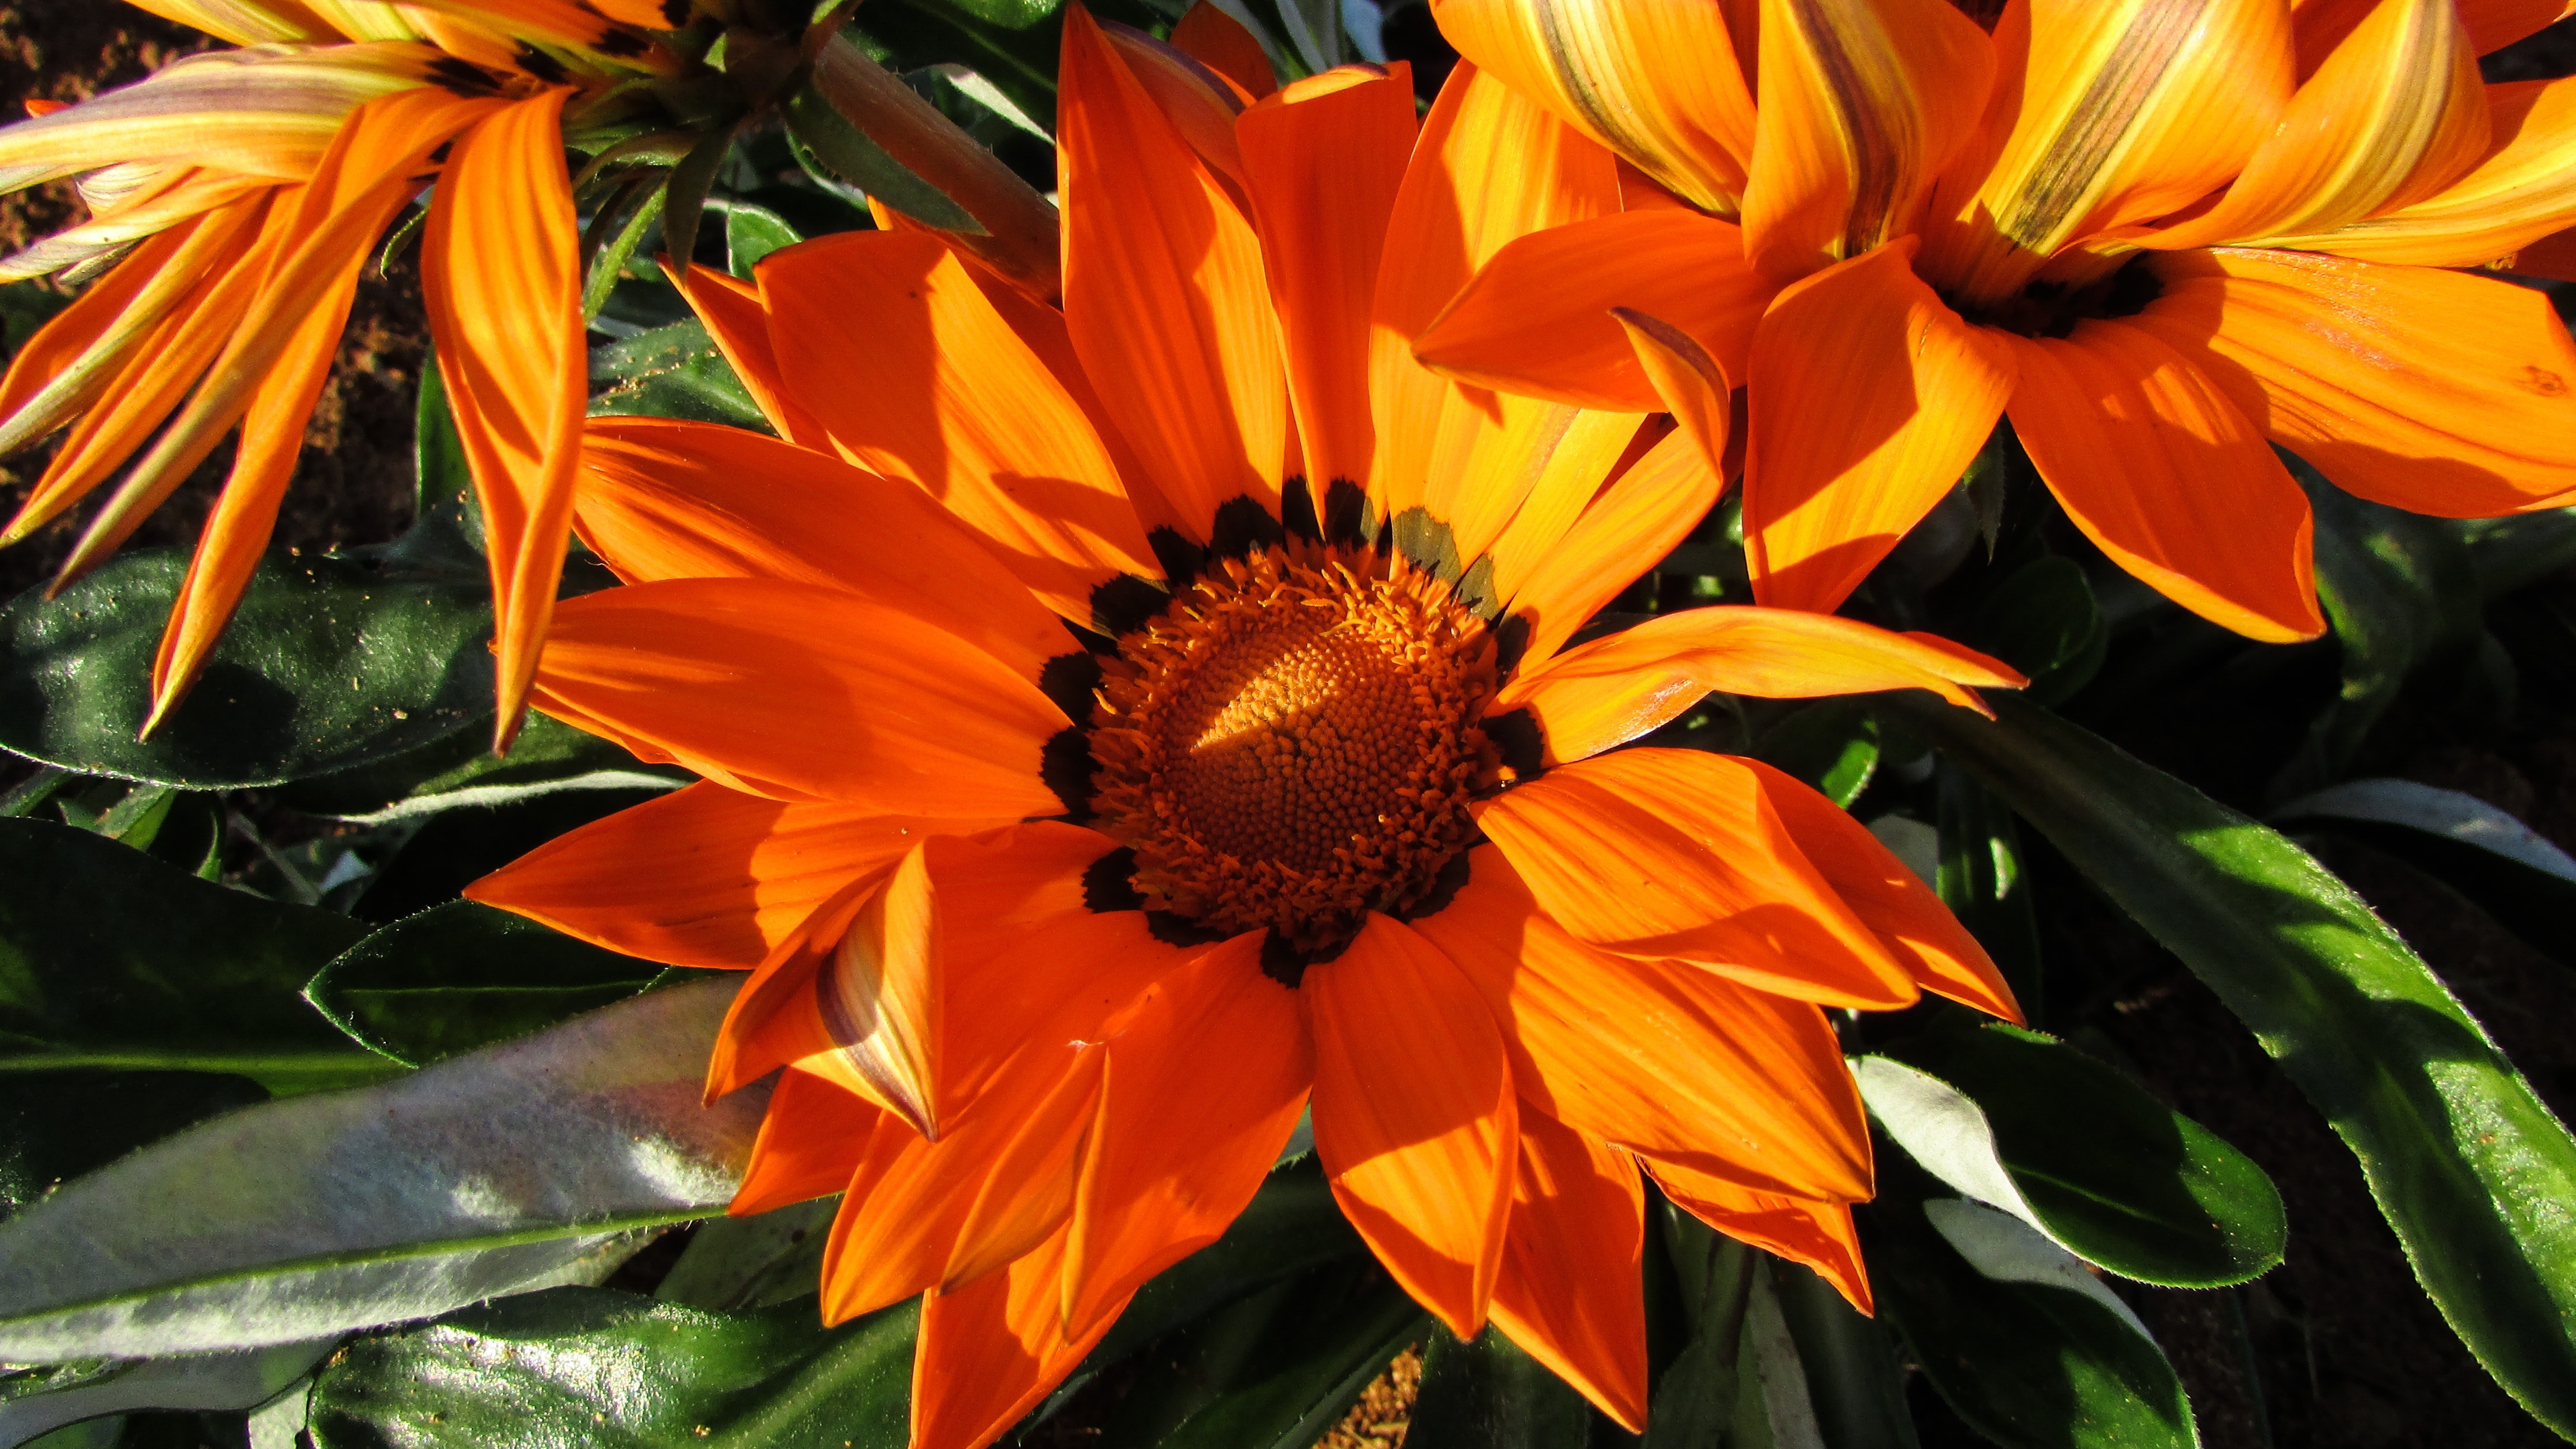 orange petaled flower at daytime